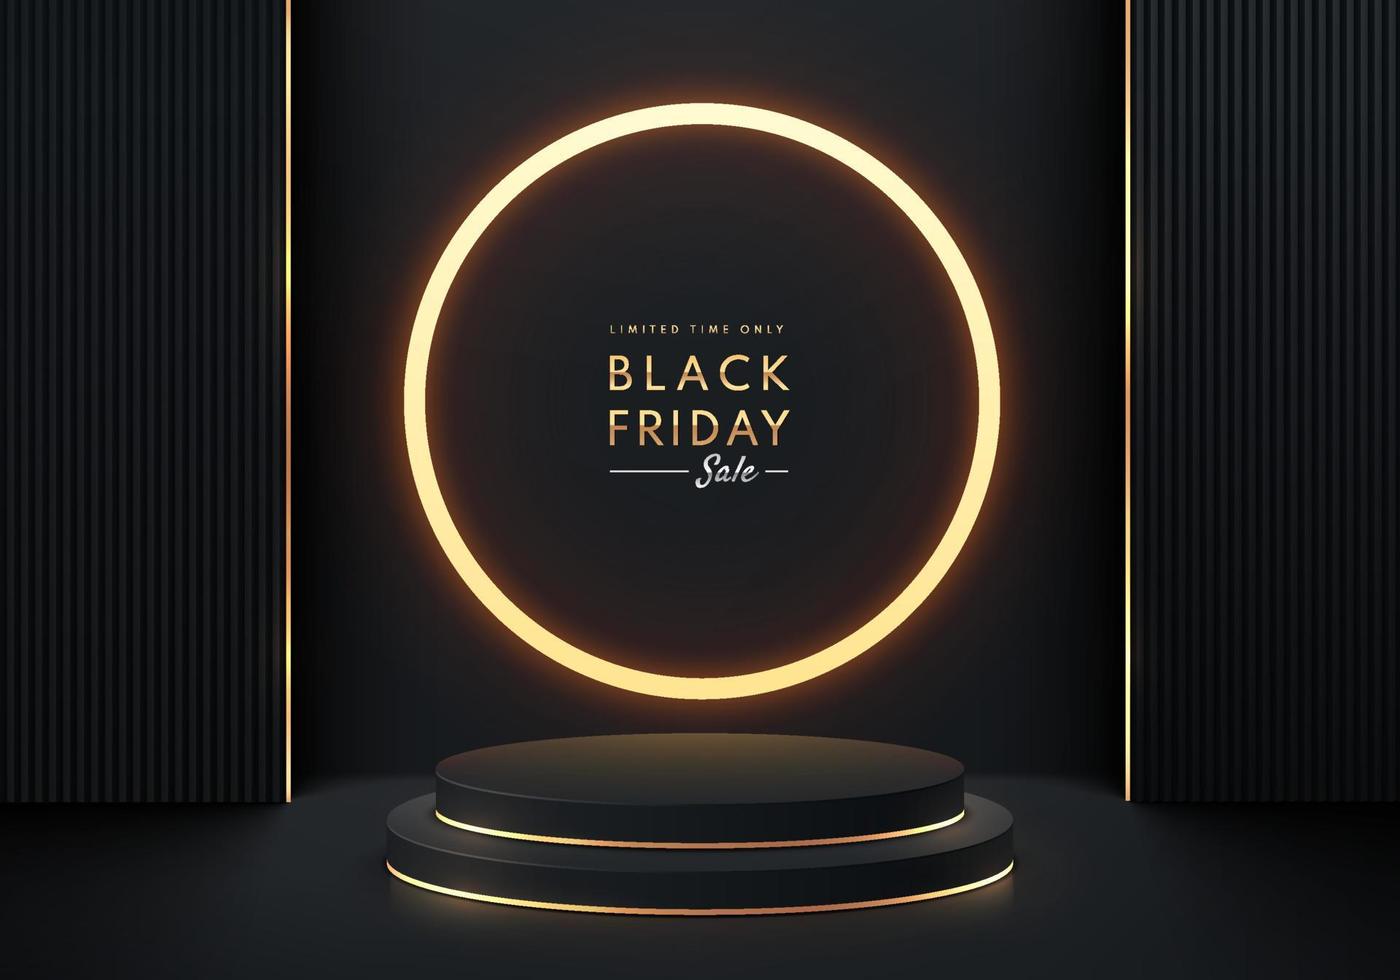 zwart, goud realistisch 3d cilinder voetstuk podium met verlichte cirkel gouden neon. vector abstract met geometrische vormen. black friday minimale scene voor mockup producten showcase, promotie display.